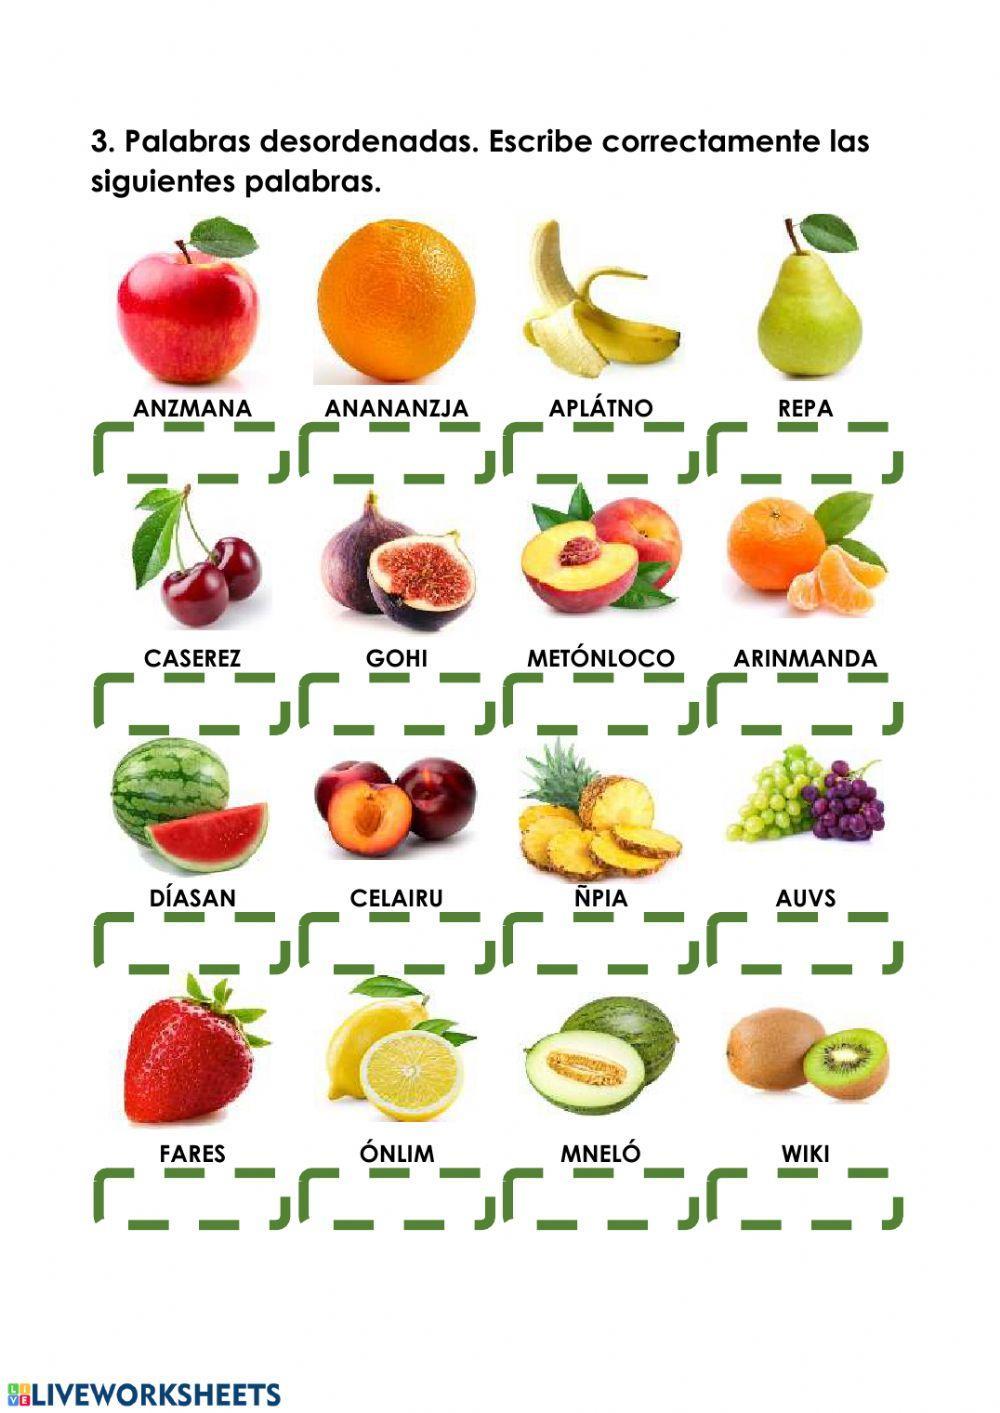 Frutas y verduras.